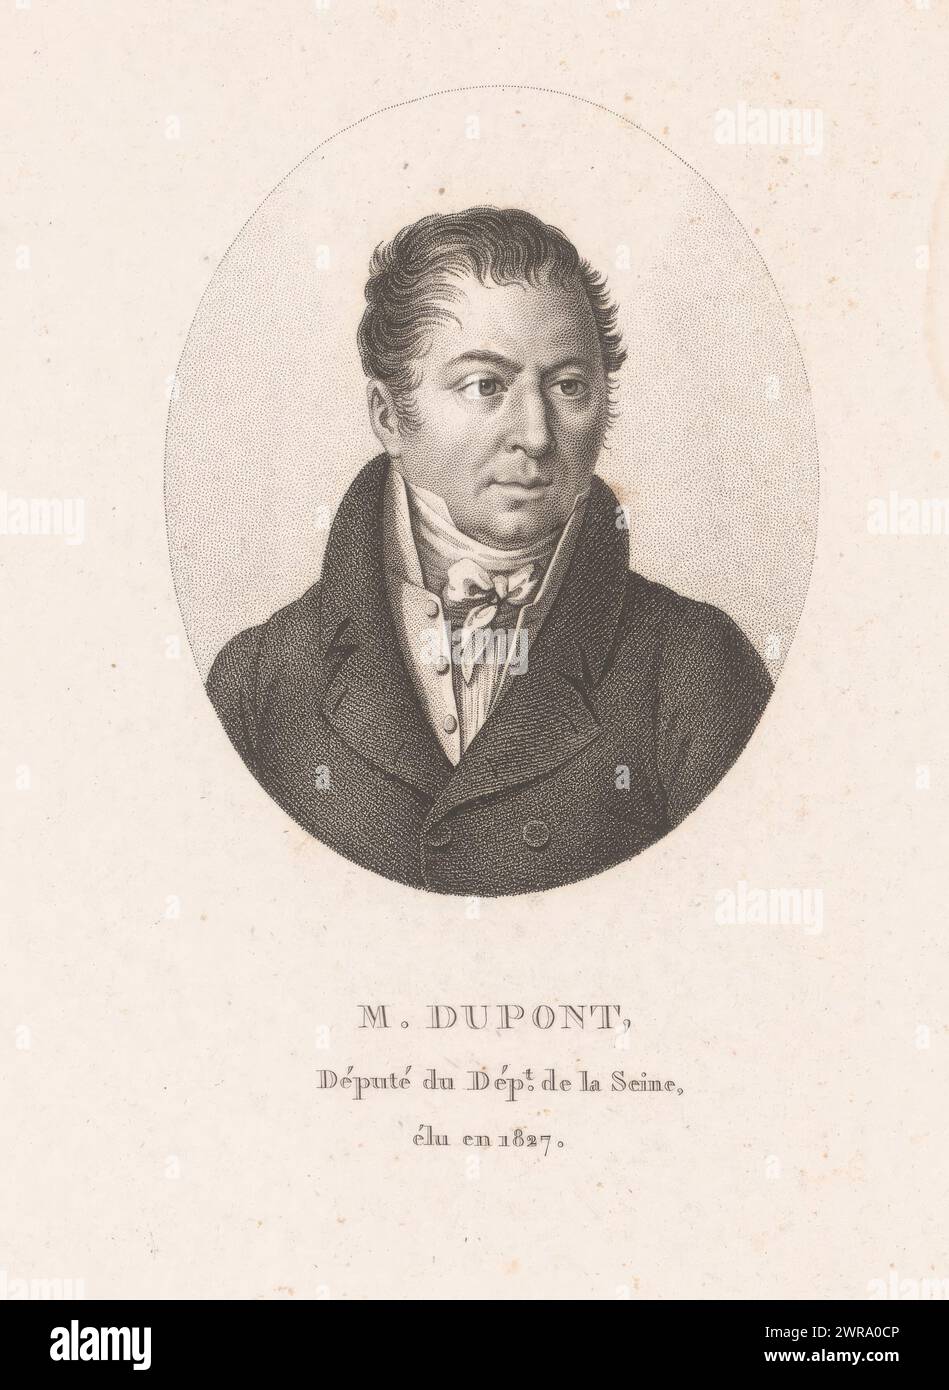 Portrait of Jacques Charles Dupont de l'Eure, print maker: Ambroise Tardieu, Paris, 1820 - 1821, paper, engraving, height 219 mm × width 135 mm, print Stock Photo